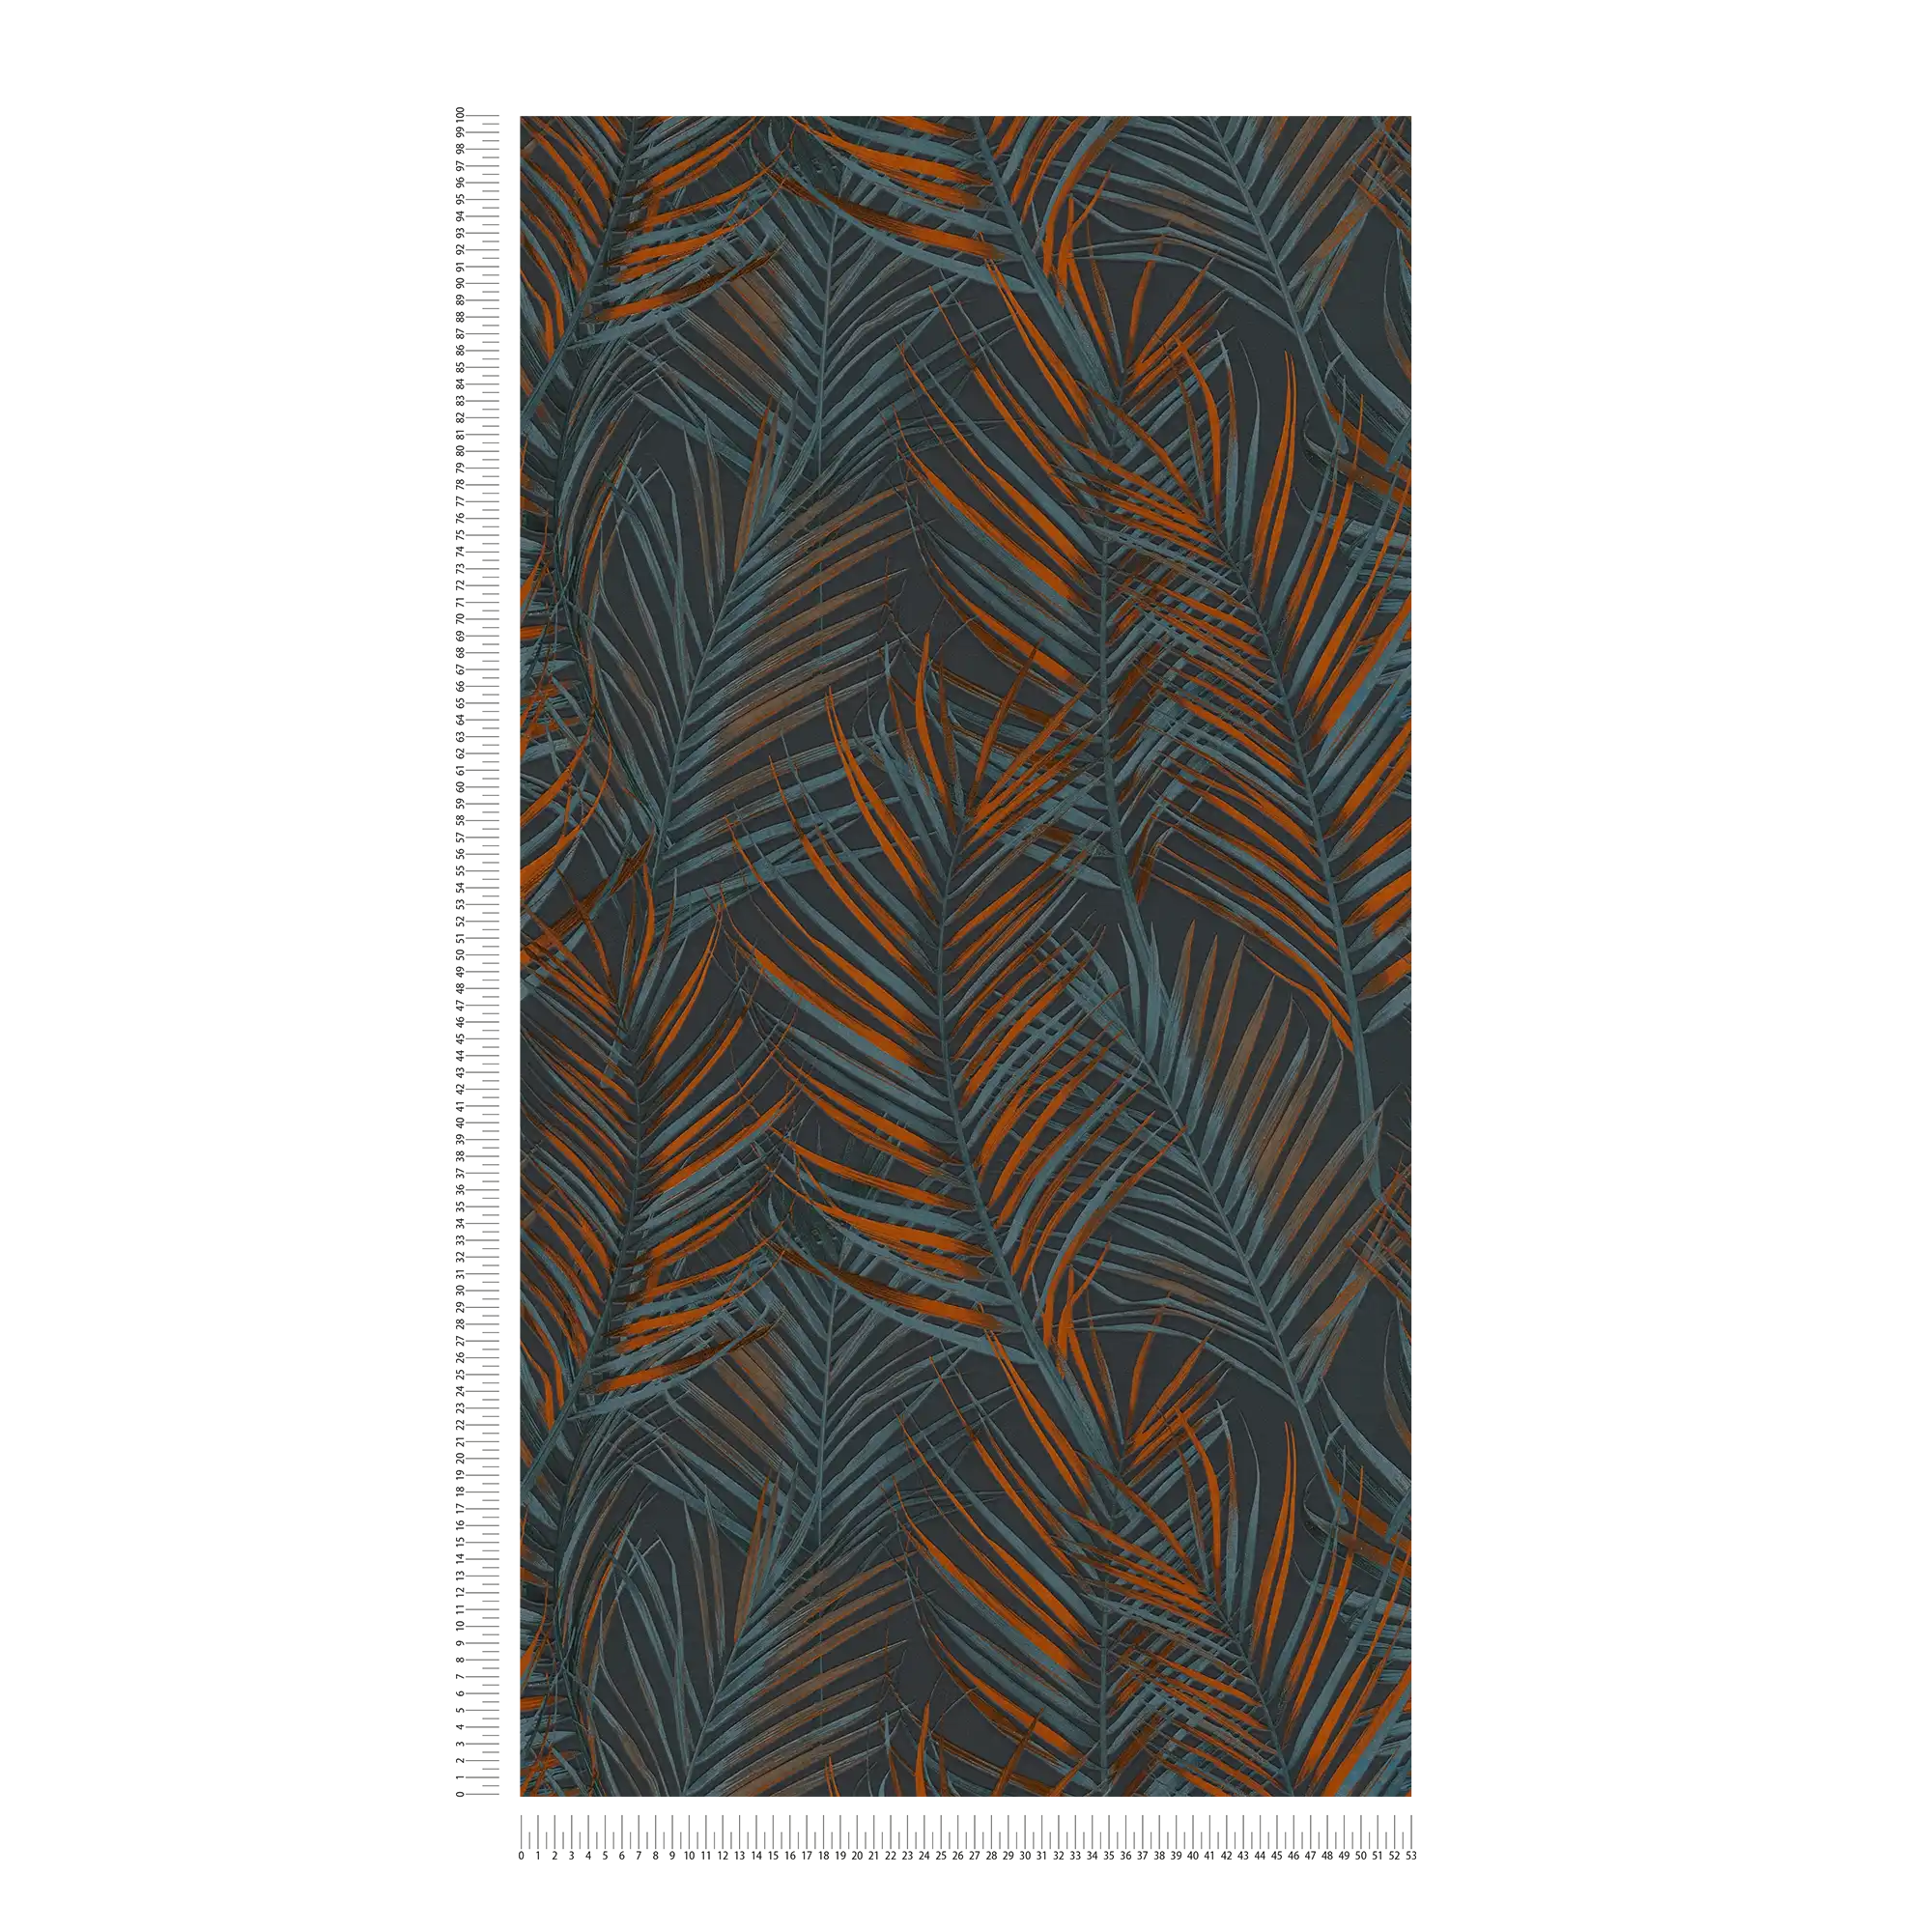             Dschungel Tapete mit Palmen Blätter in matt – Schwarz, Orange, Petrol
        